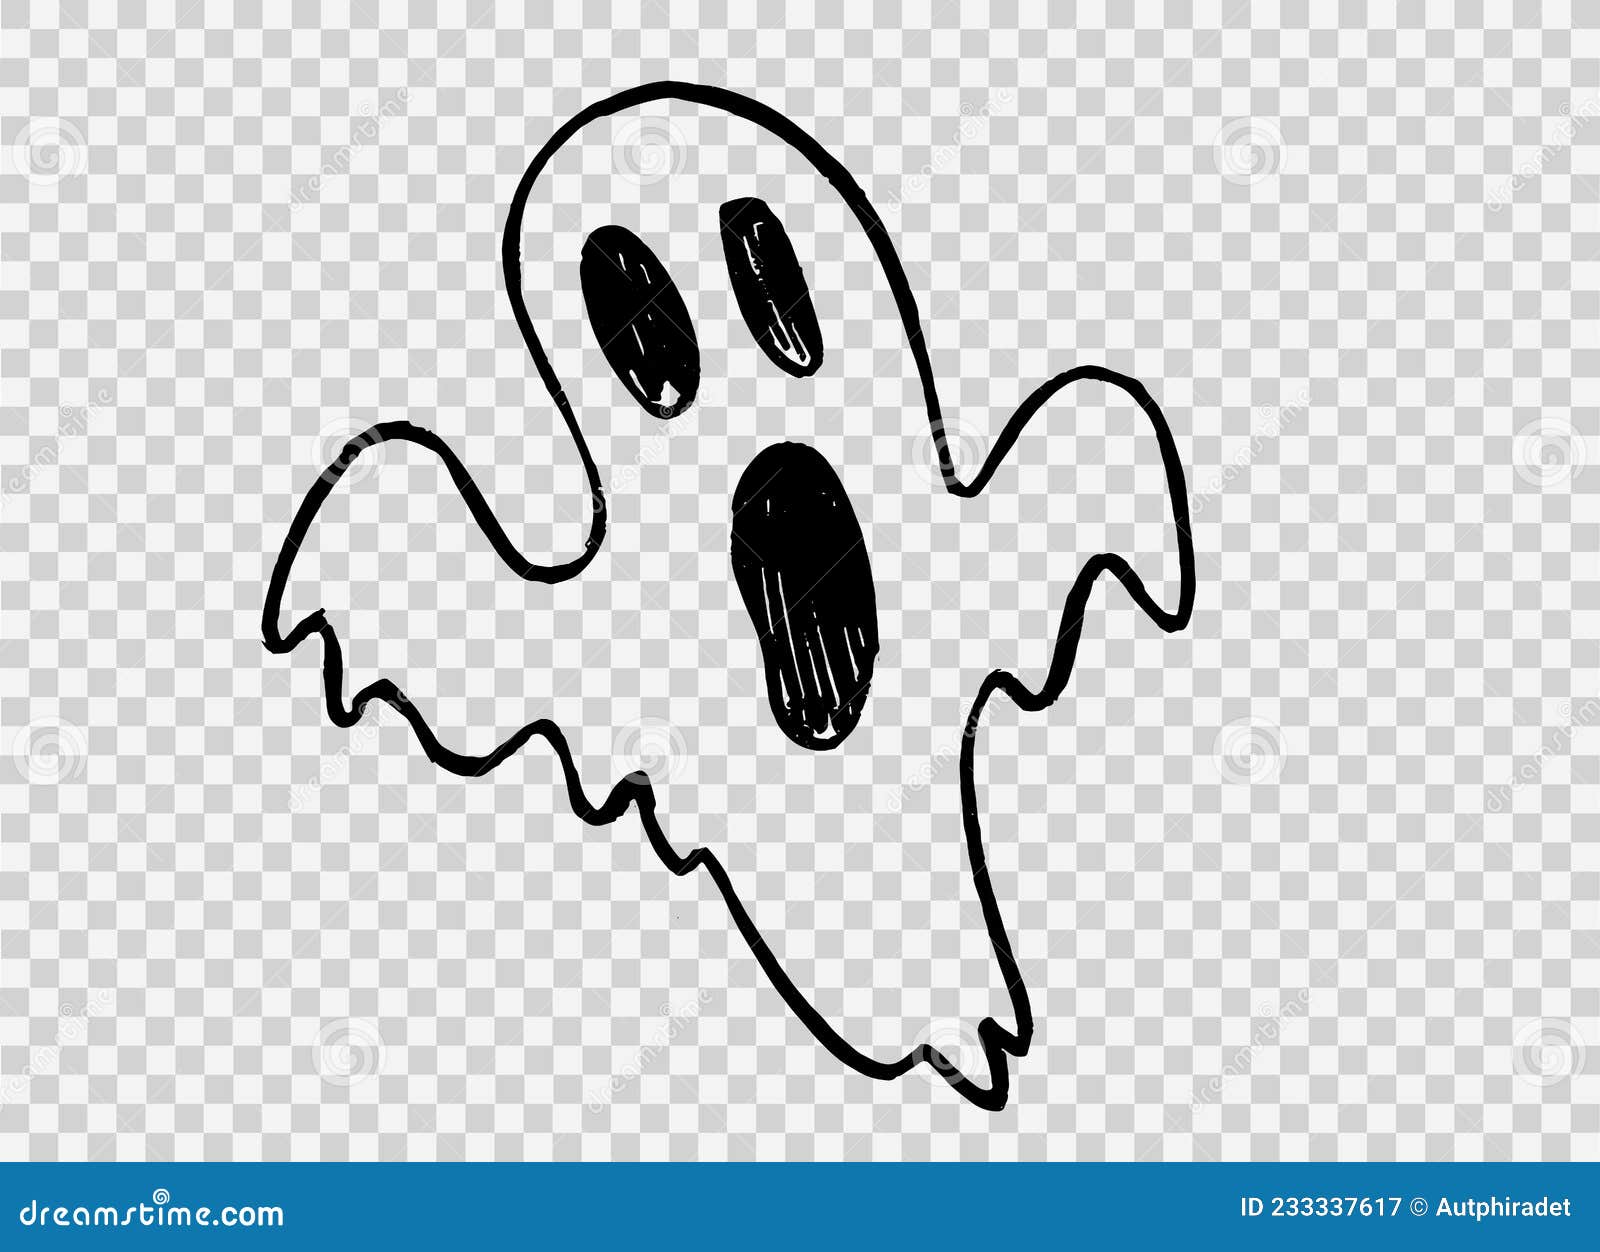 fantasma assustador de halloween png em um fundo transparente